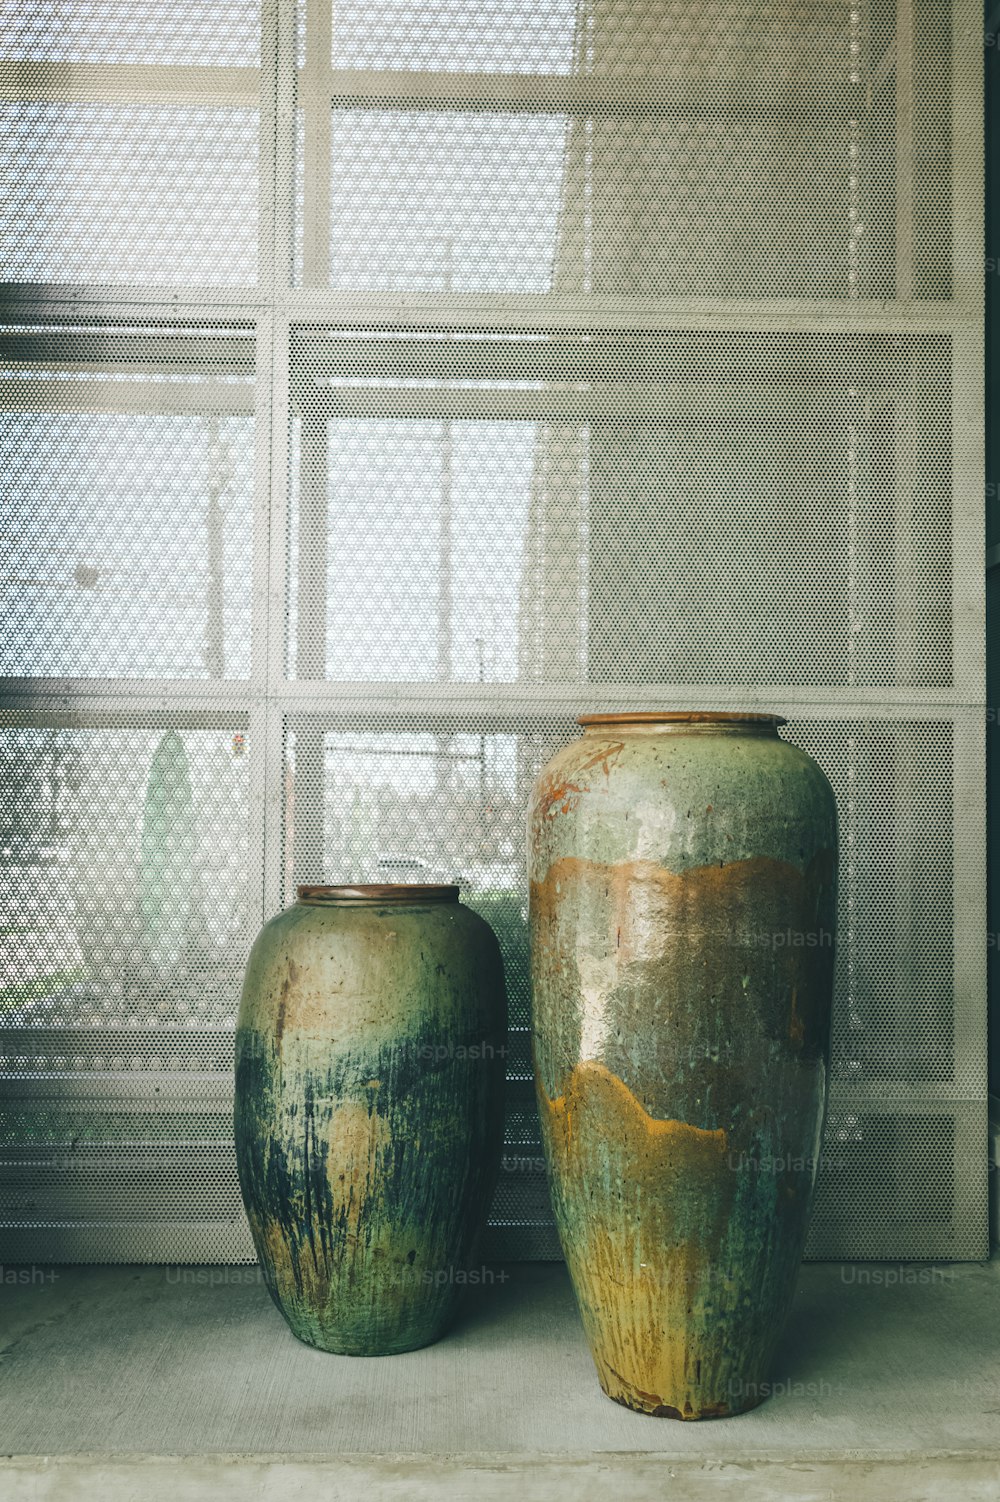 窓の前で隣り合って座っている2つの緑の花瓶